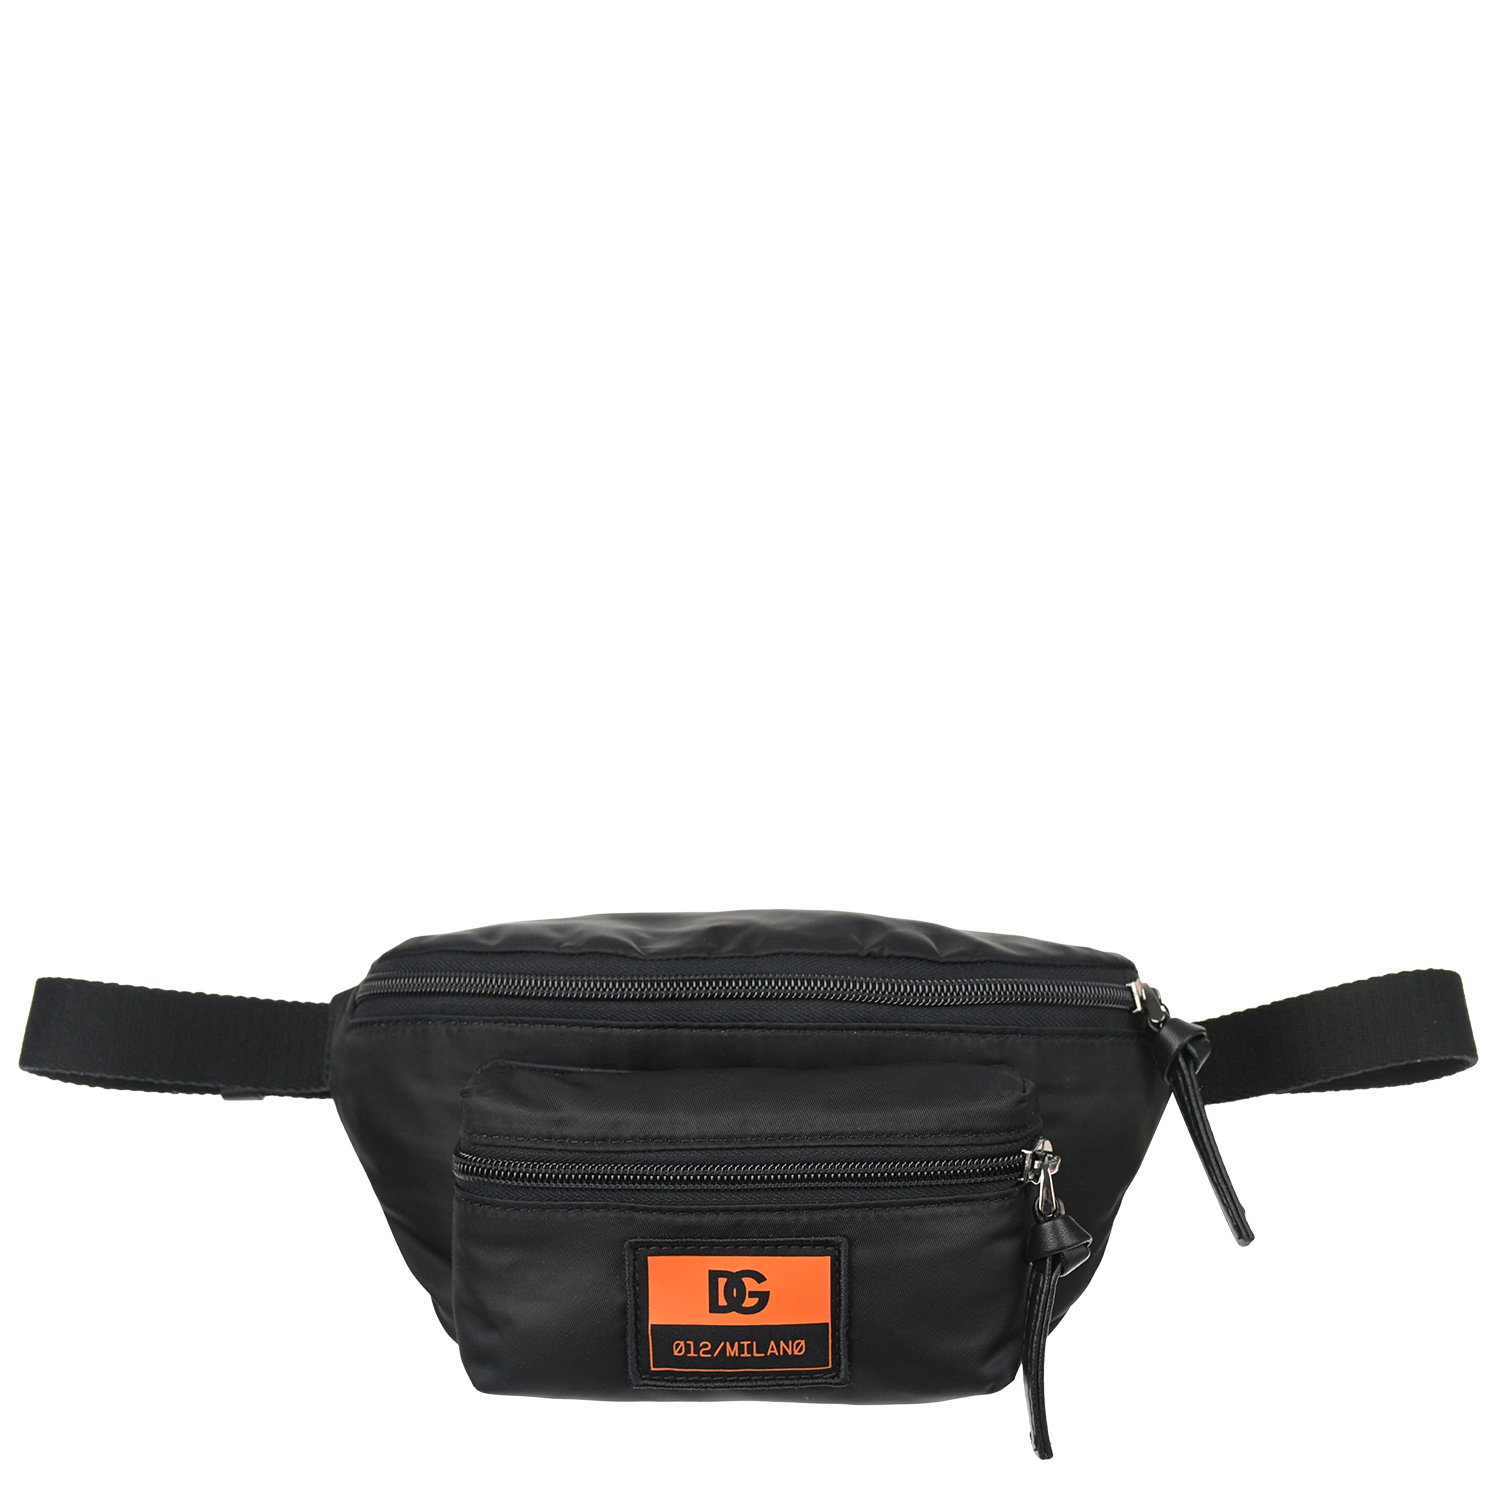 Черная сумка-пояс с лого, 20x12x8 см Dolce&Gabbana, размер unica, цвет черный